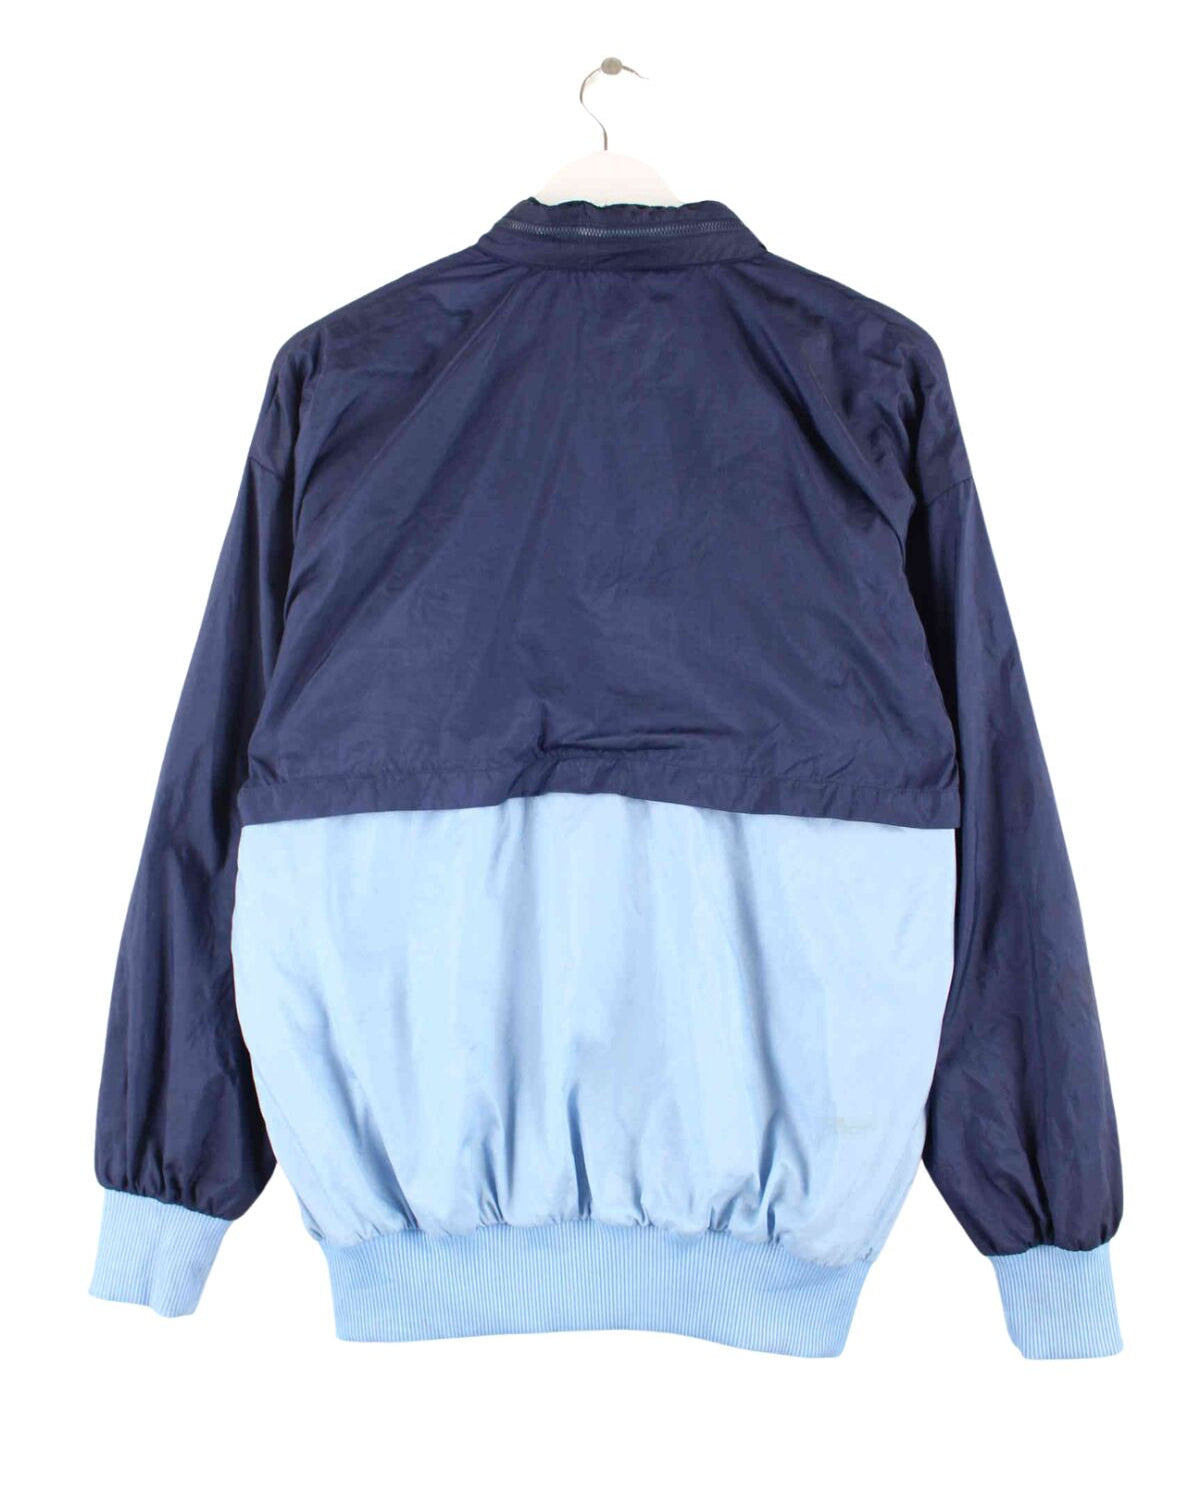 Adidas 80s Vintage Trainingsjacke Blau S (back image)